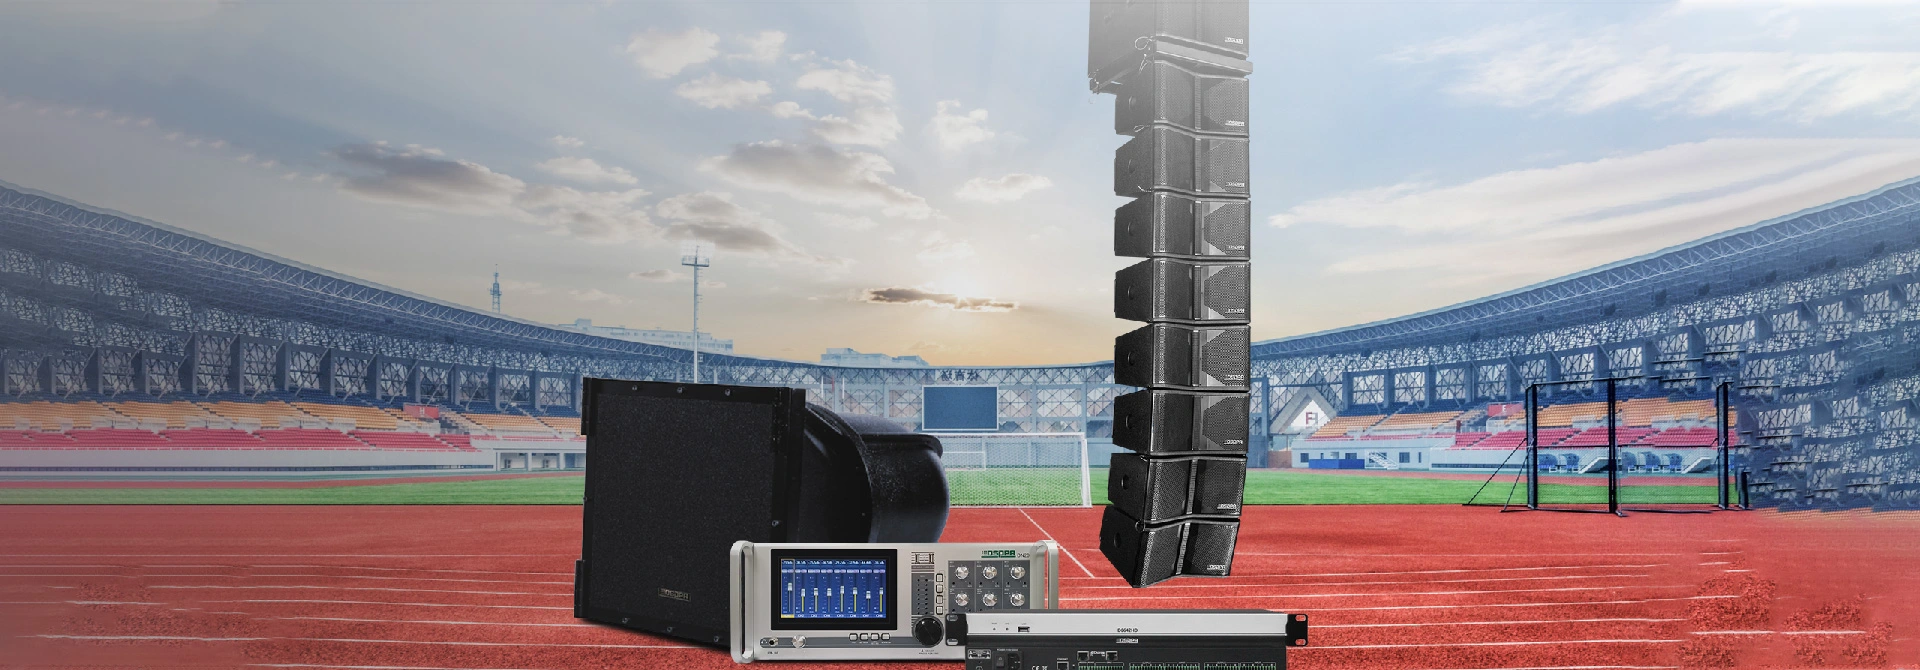 Penyelesaian sistem bunyi profesional untuk stadium luar yang besar